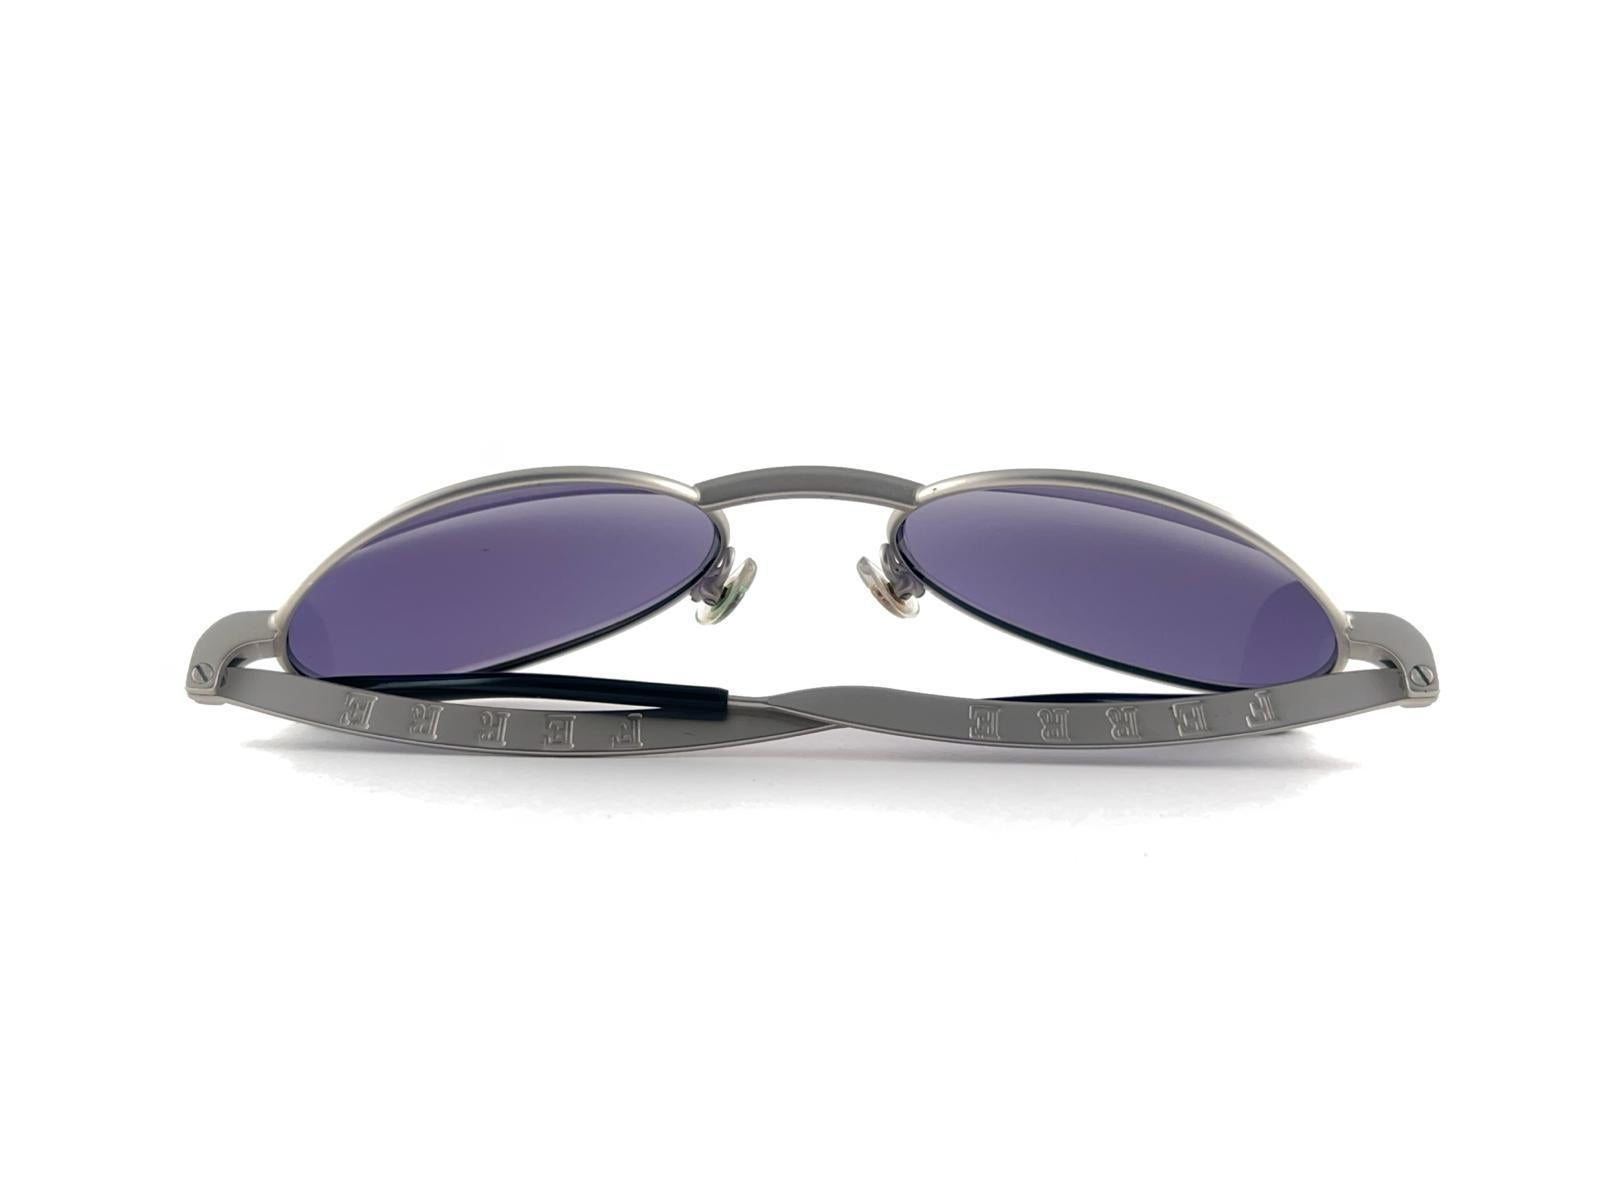 Neue Vintage Gianfranco Ferre Sonnenbrille

Oval Silber gebürstet metallischen Rahmen hält ein Paar von Spotless lila Linsen
  
Neu, nie getragen oder ausgestellt
 
Dieser Artikel kann geringe Anzeichen von Verschleiß aufgrund der Lagerung